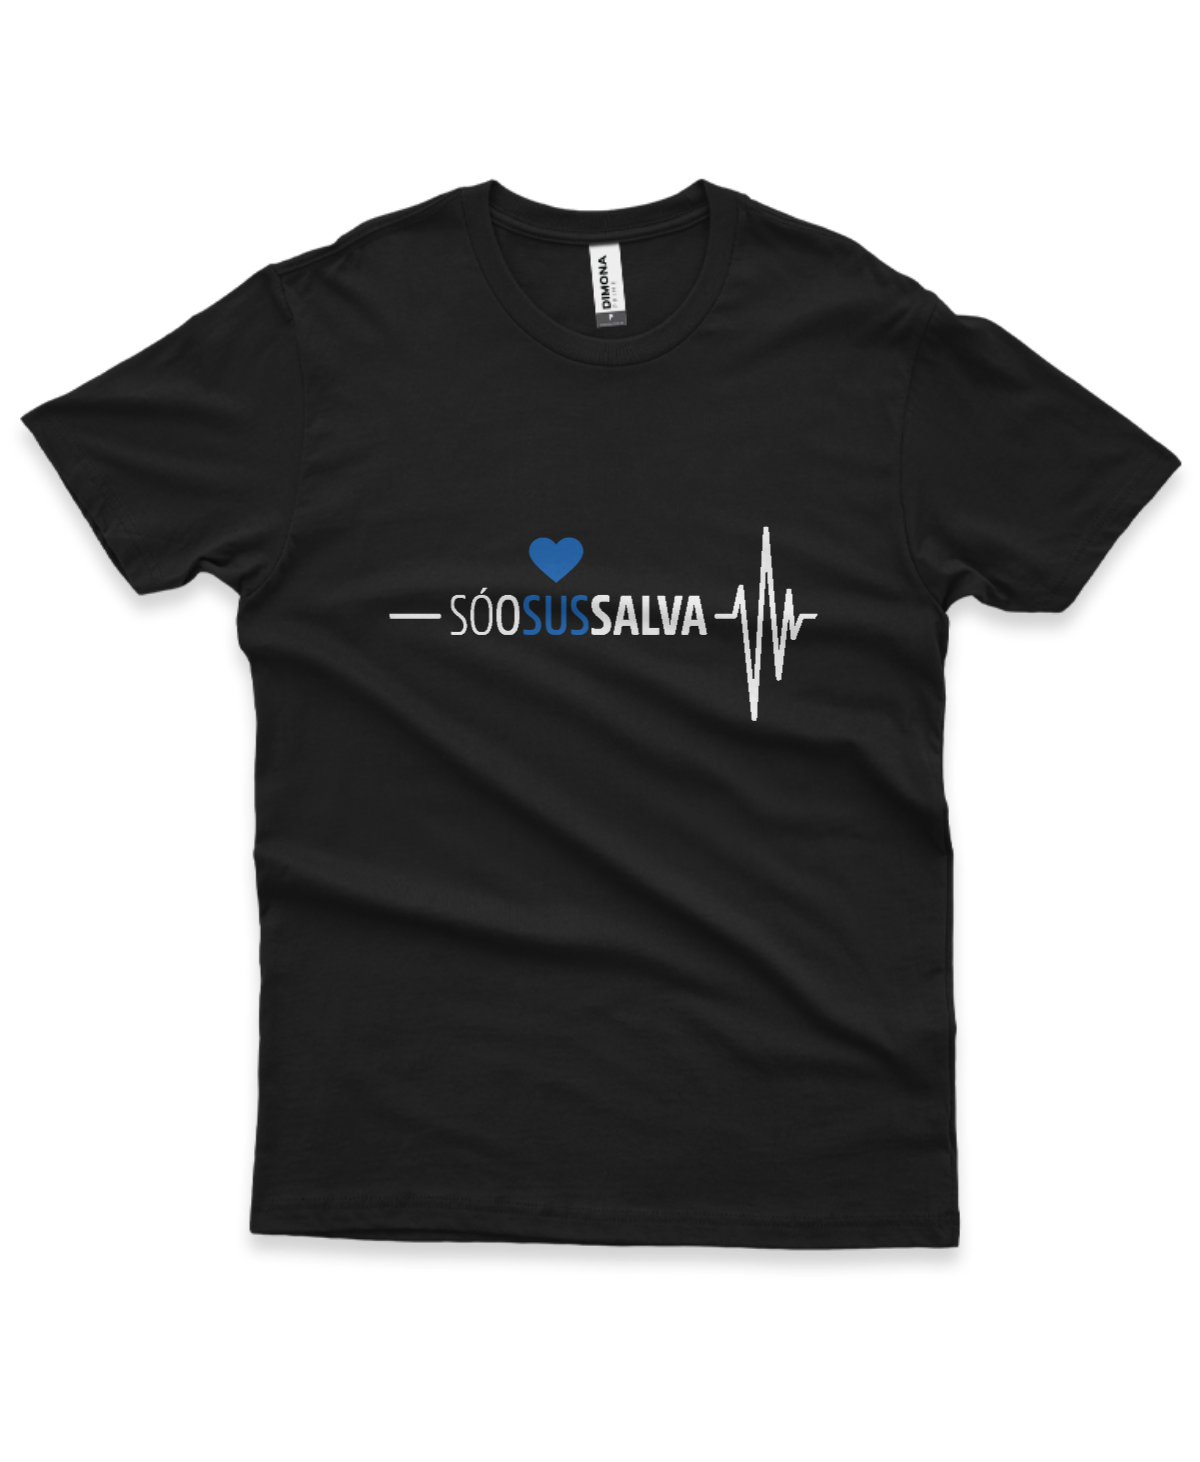 camiseta masculina cor preta com a ilustração de um coração e eletrocardiograma e a frase "Só o SUS salva"